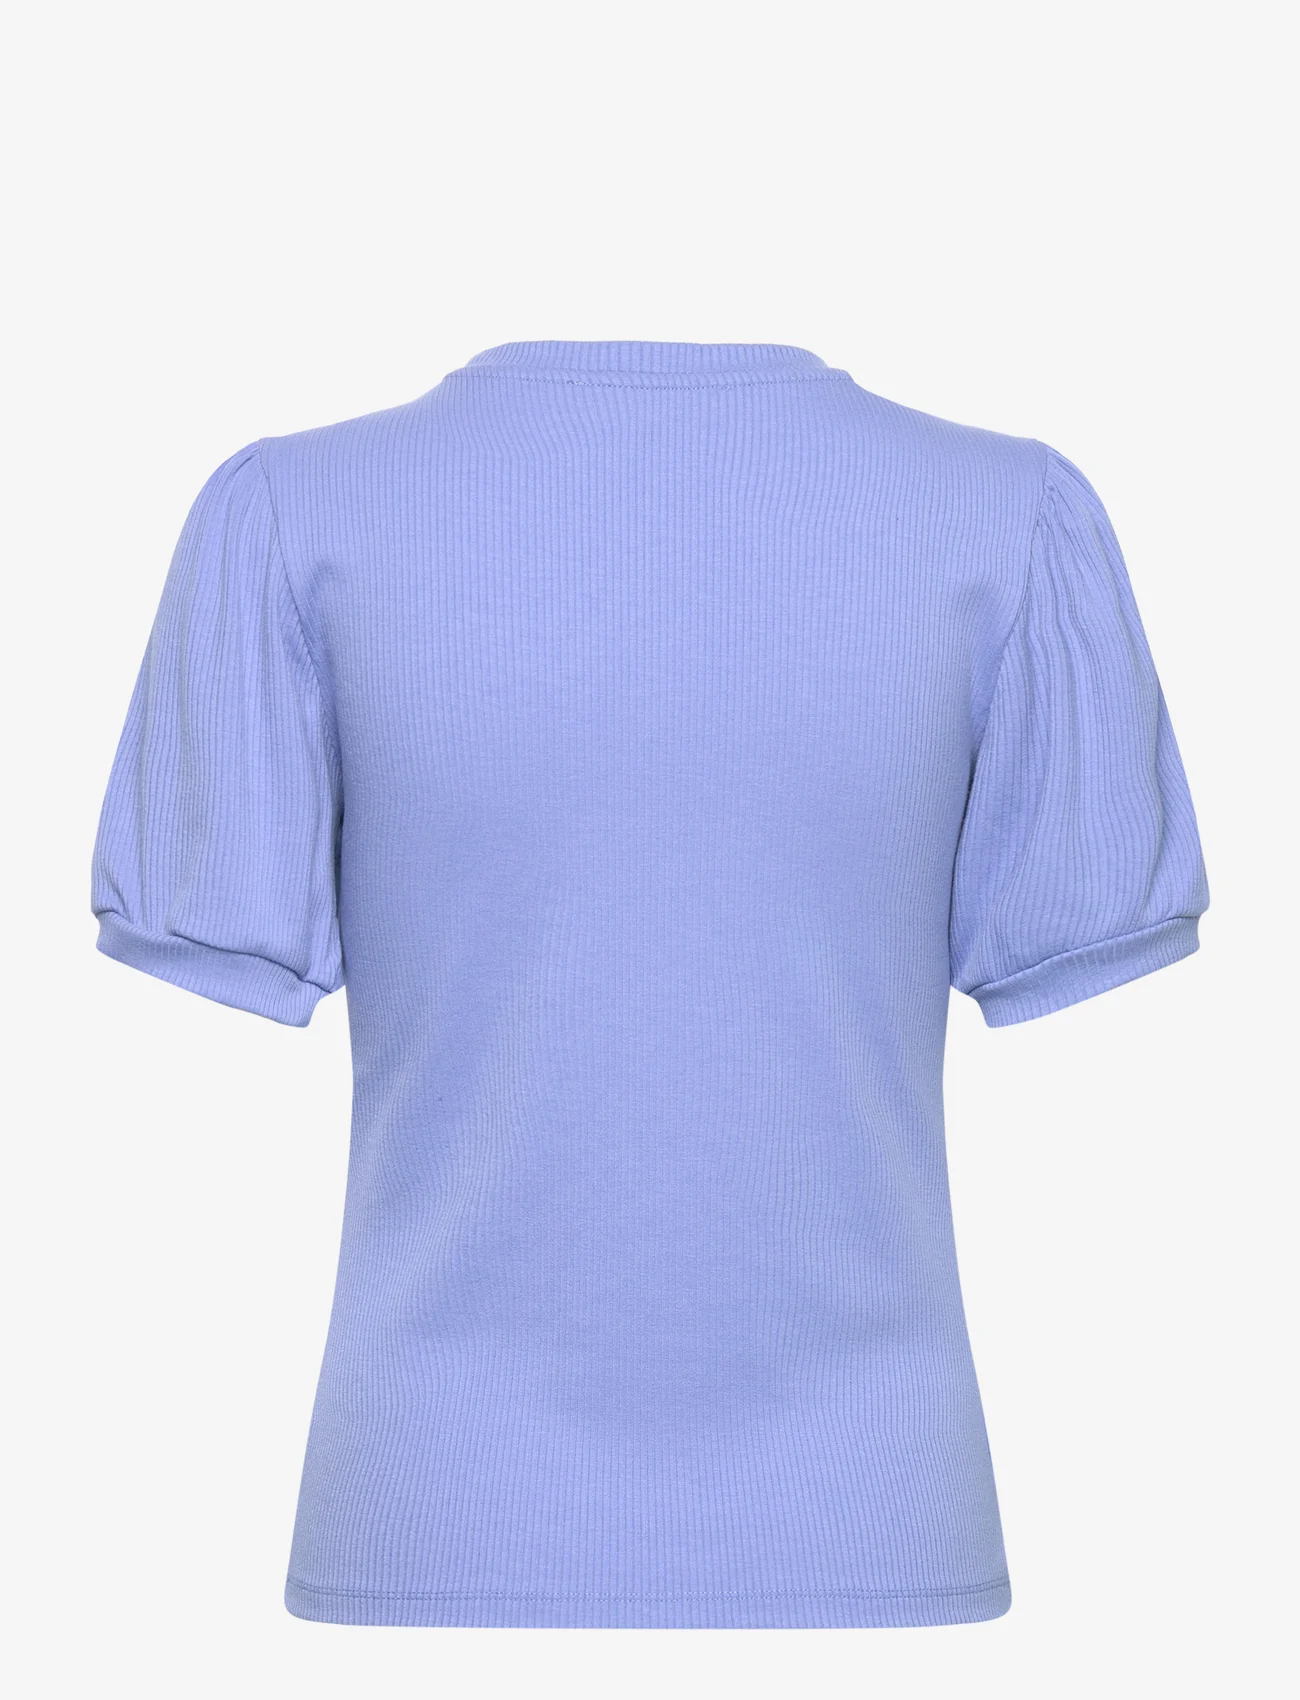 Minus - Johanna T-shirt - de laveste prisene - blue bonnet - 1